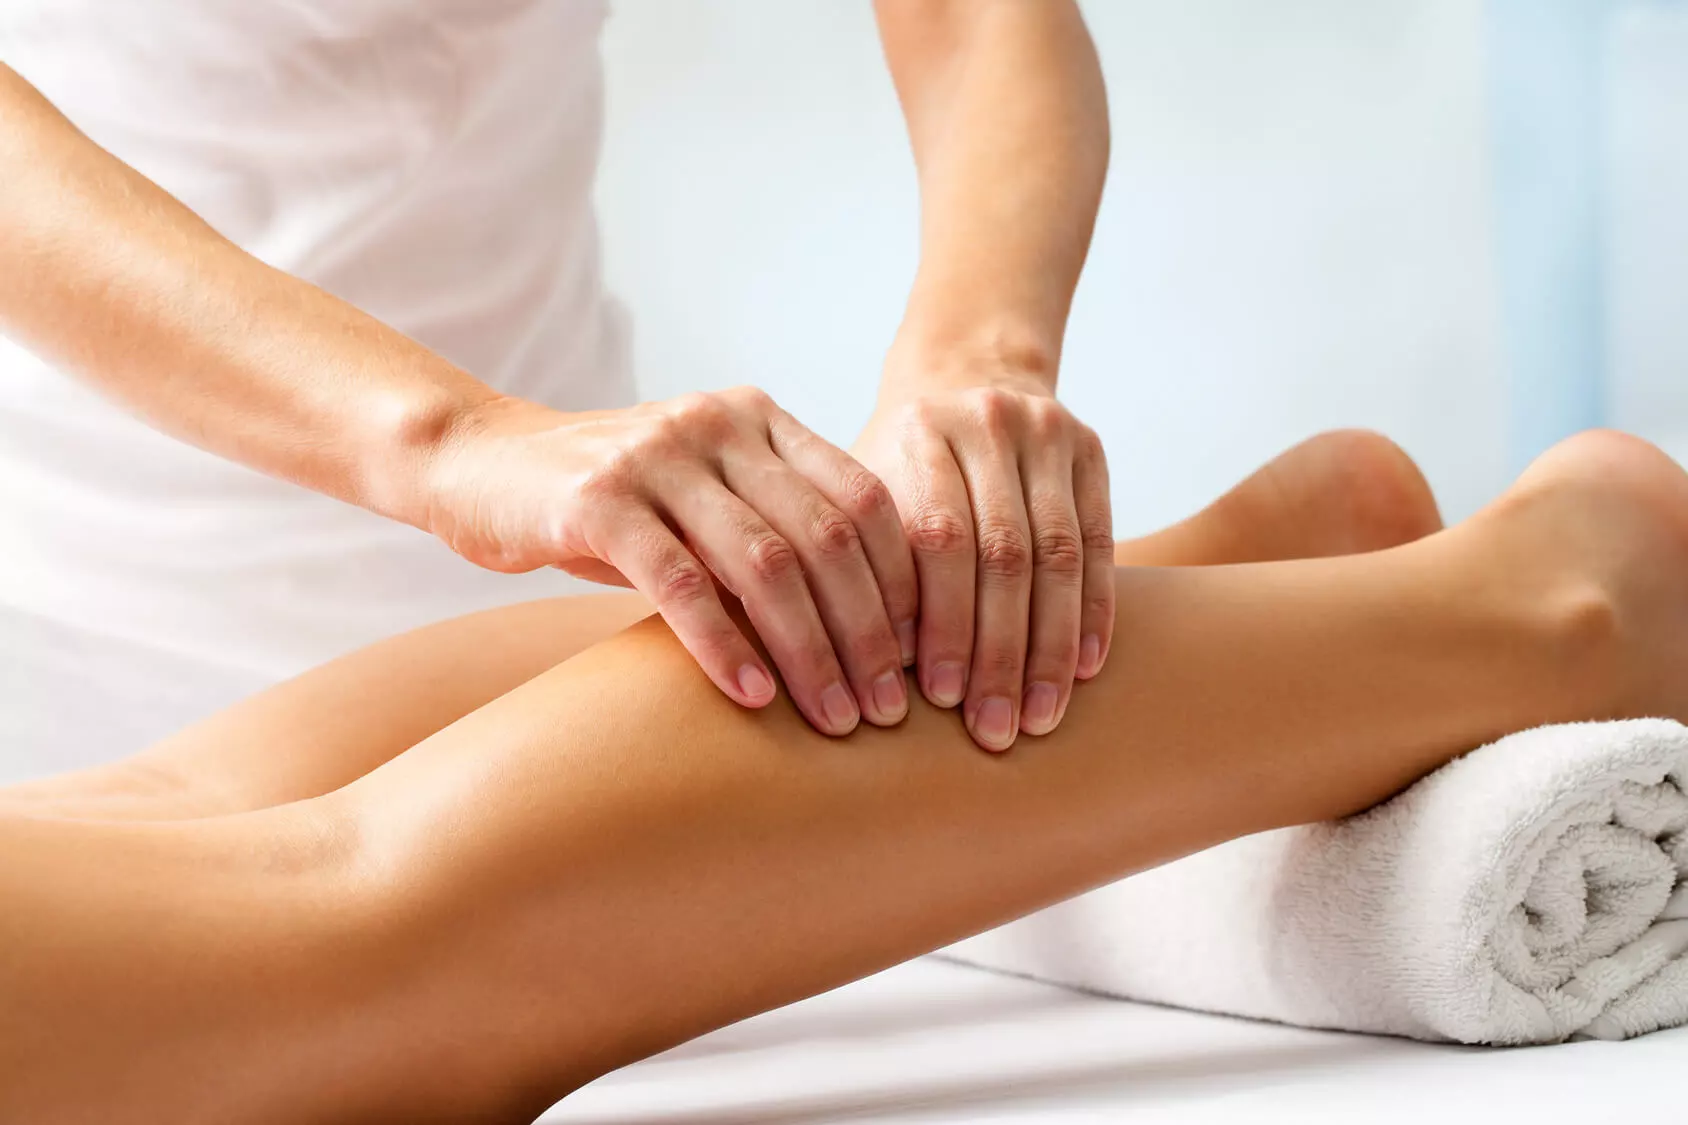 Dobrać odpowiedni stół stacjonarny do masażu czy jest to dostępne zadanie?